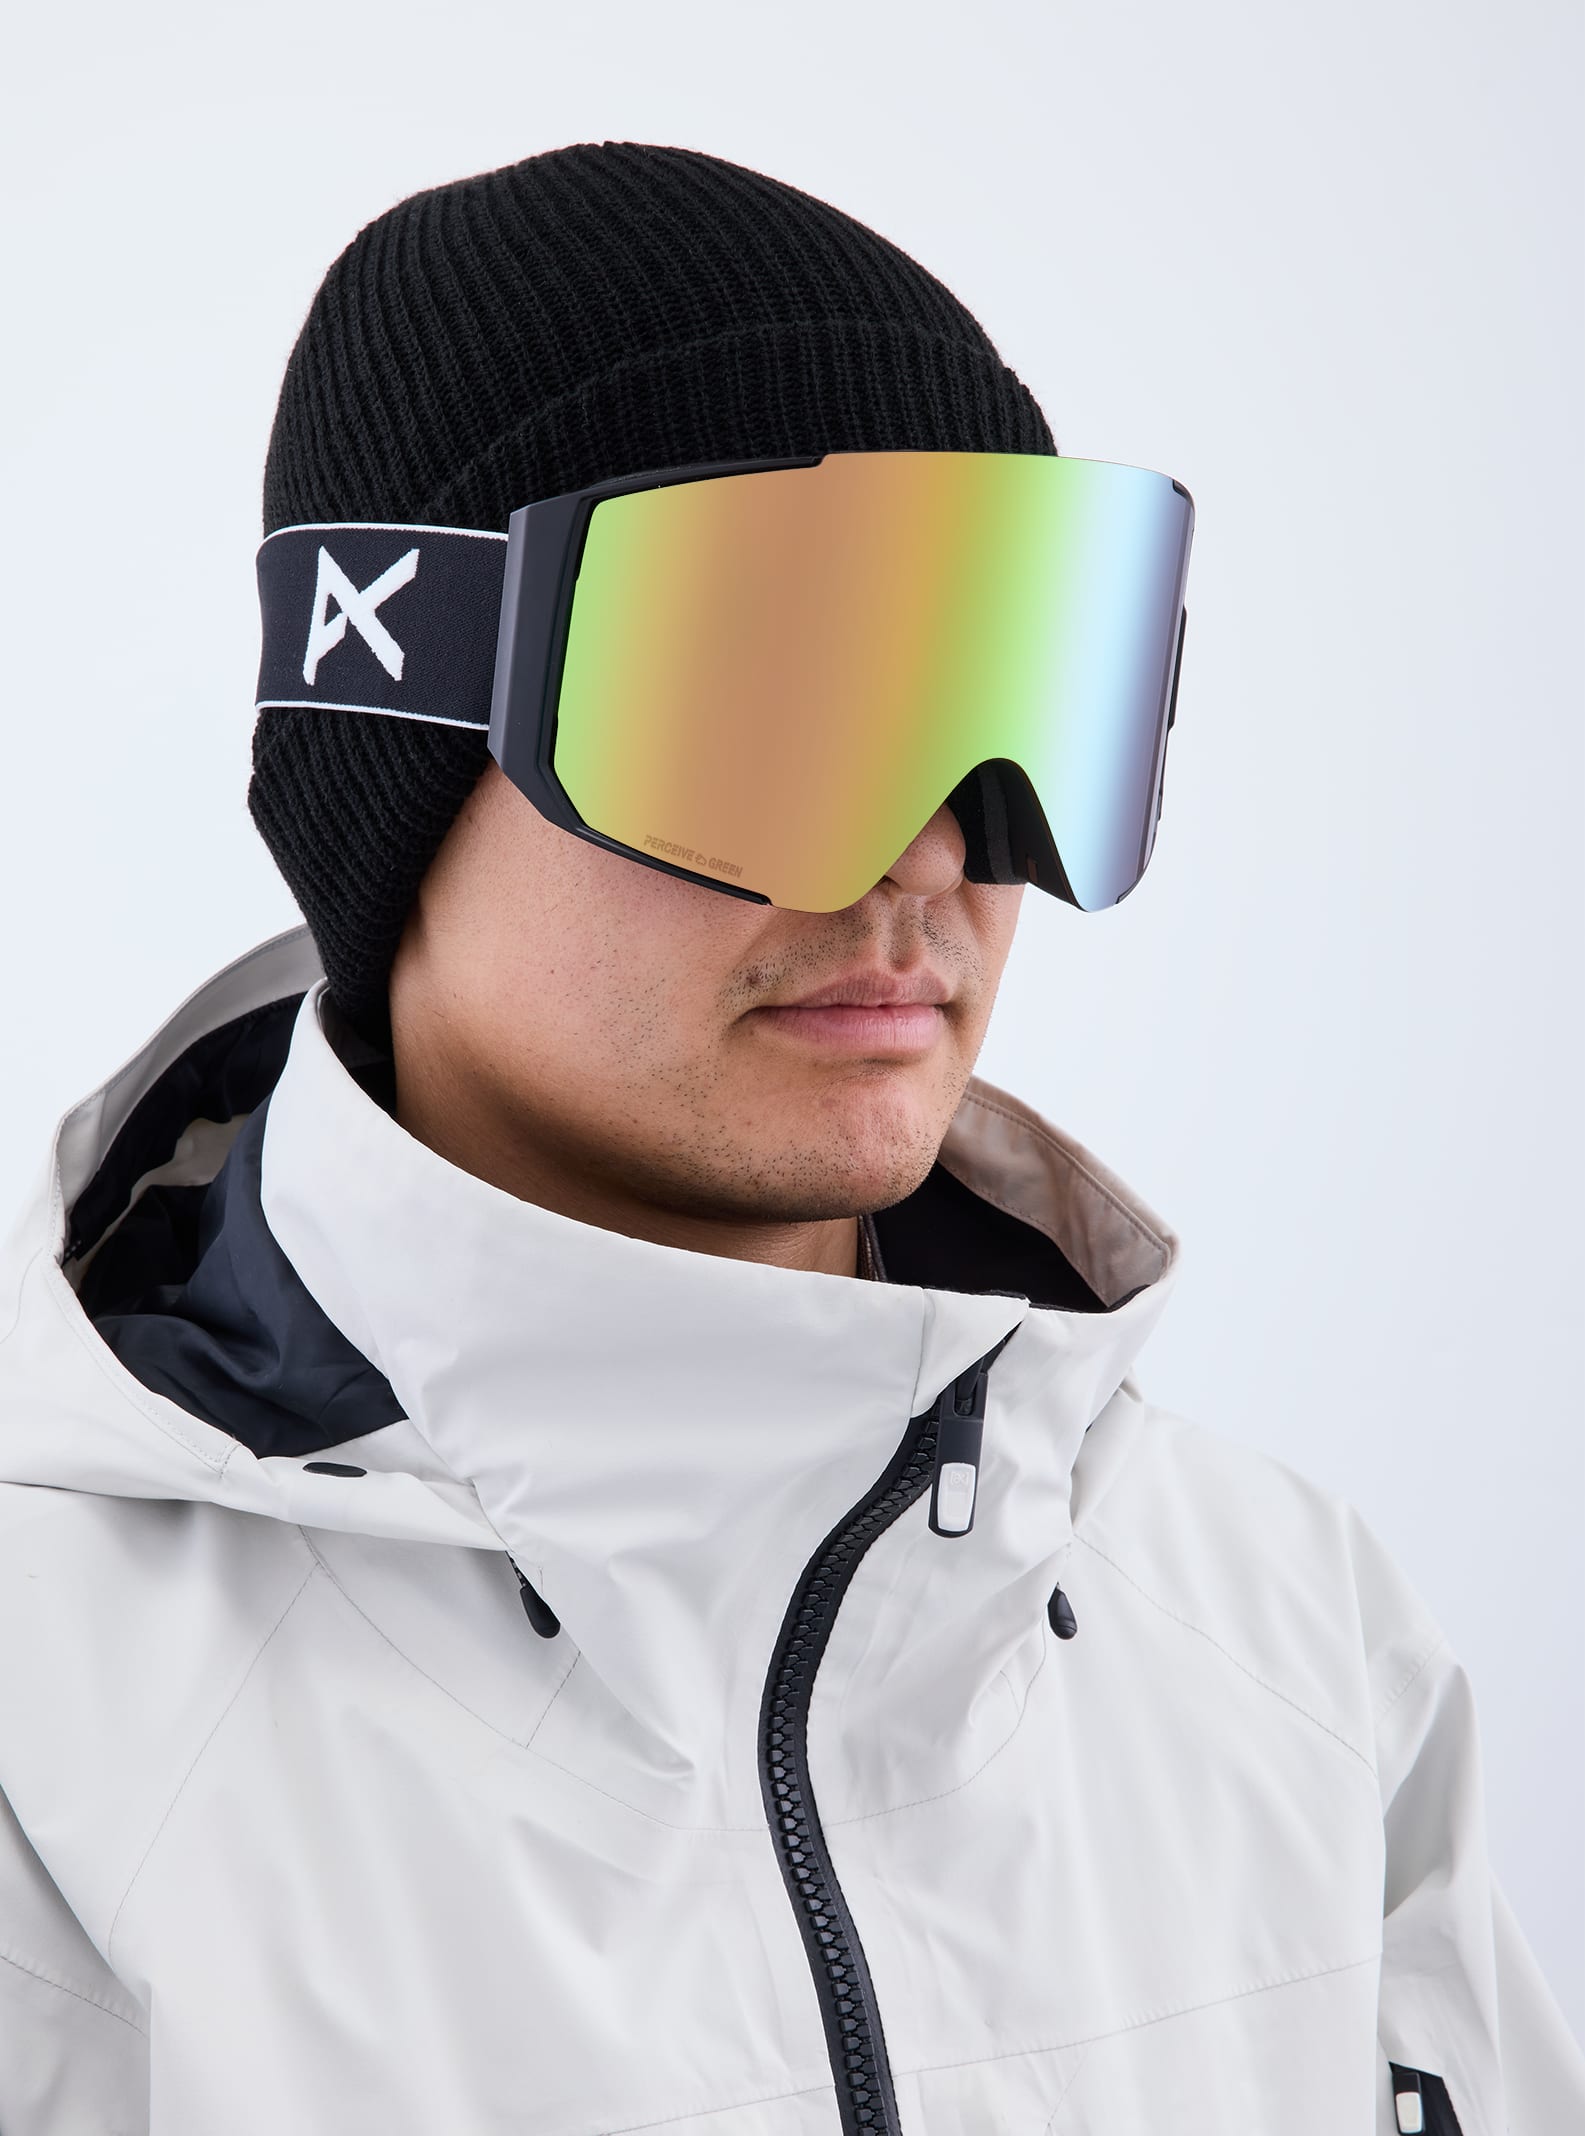 M-Fusionゴーグル&レンズ | スキー&スノーボード ゴーグル | Anon 